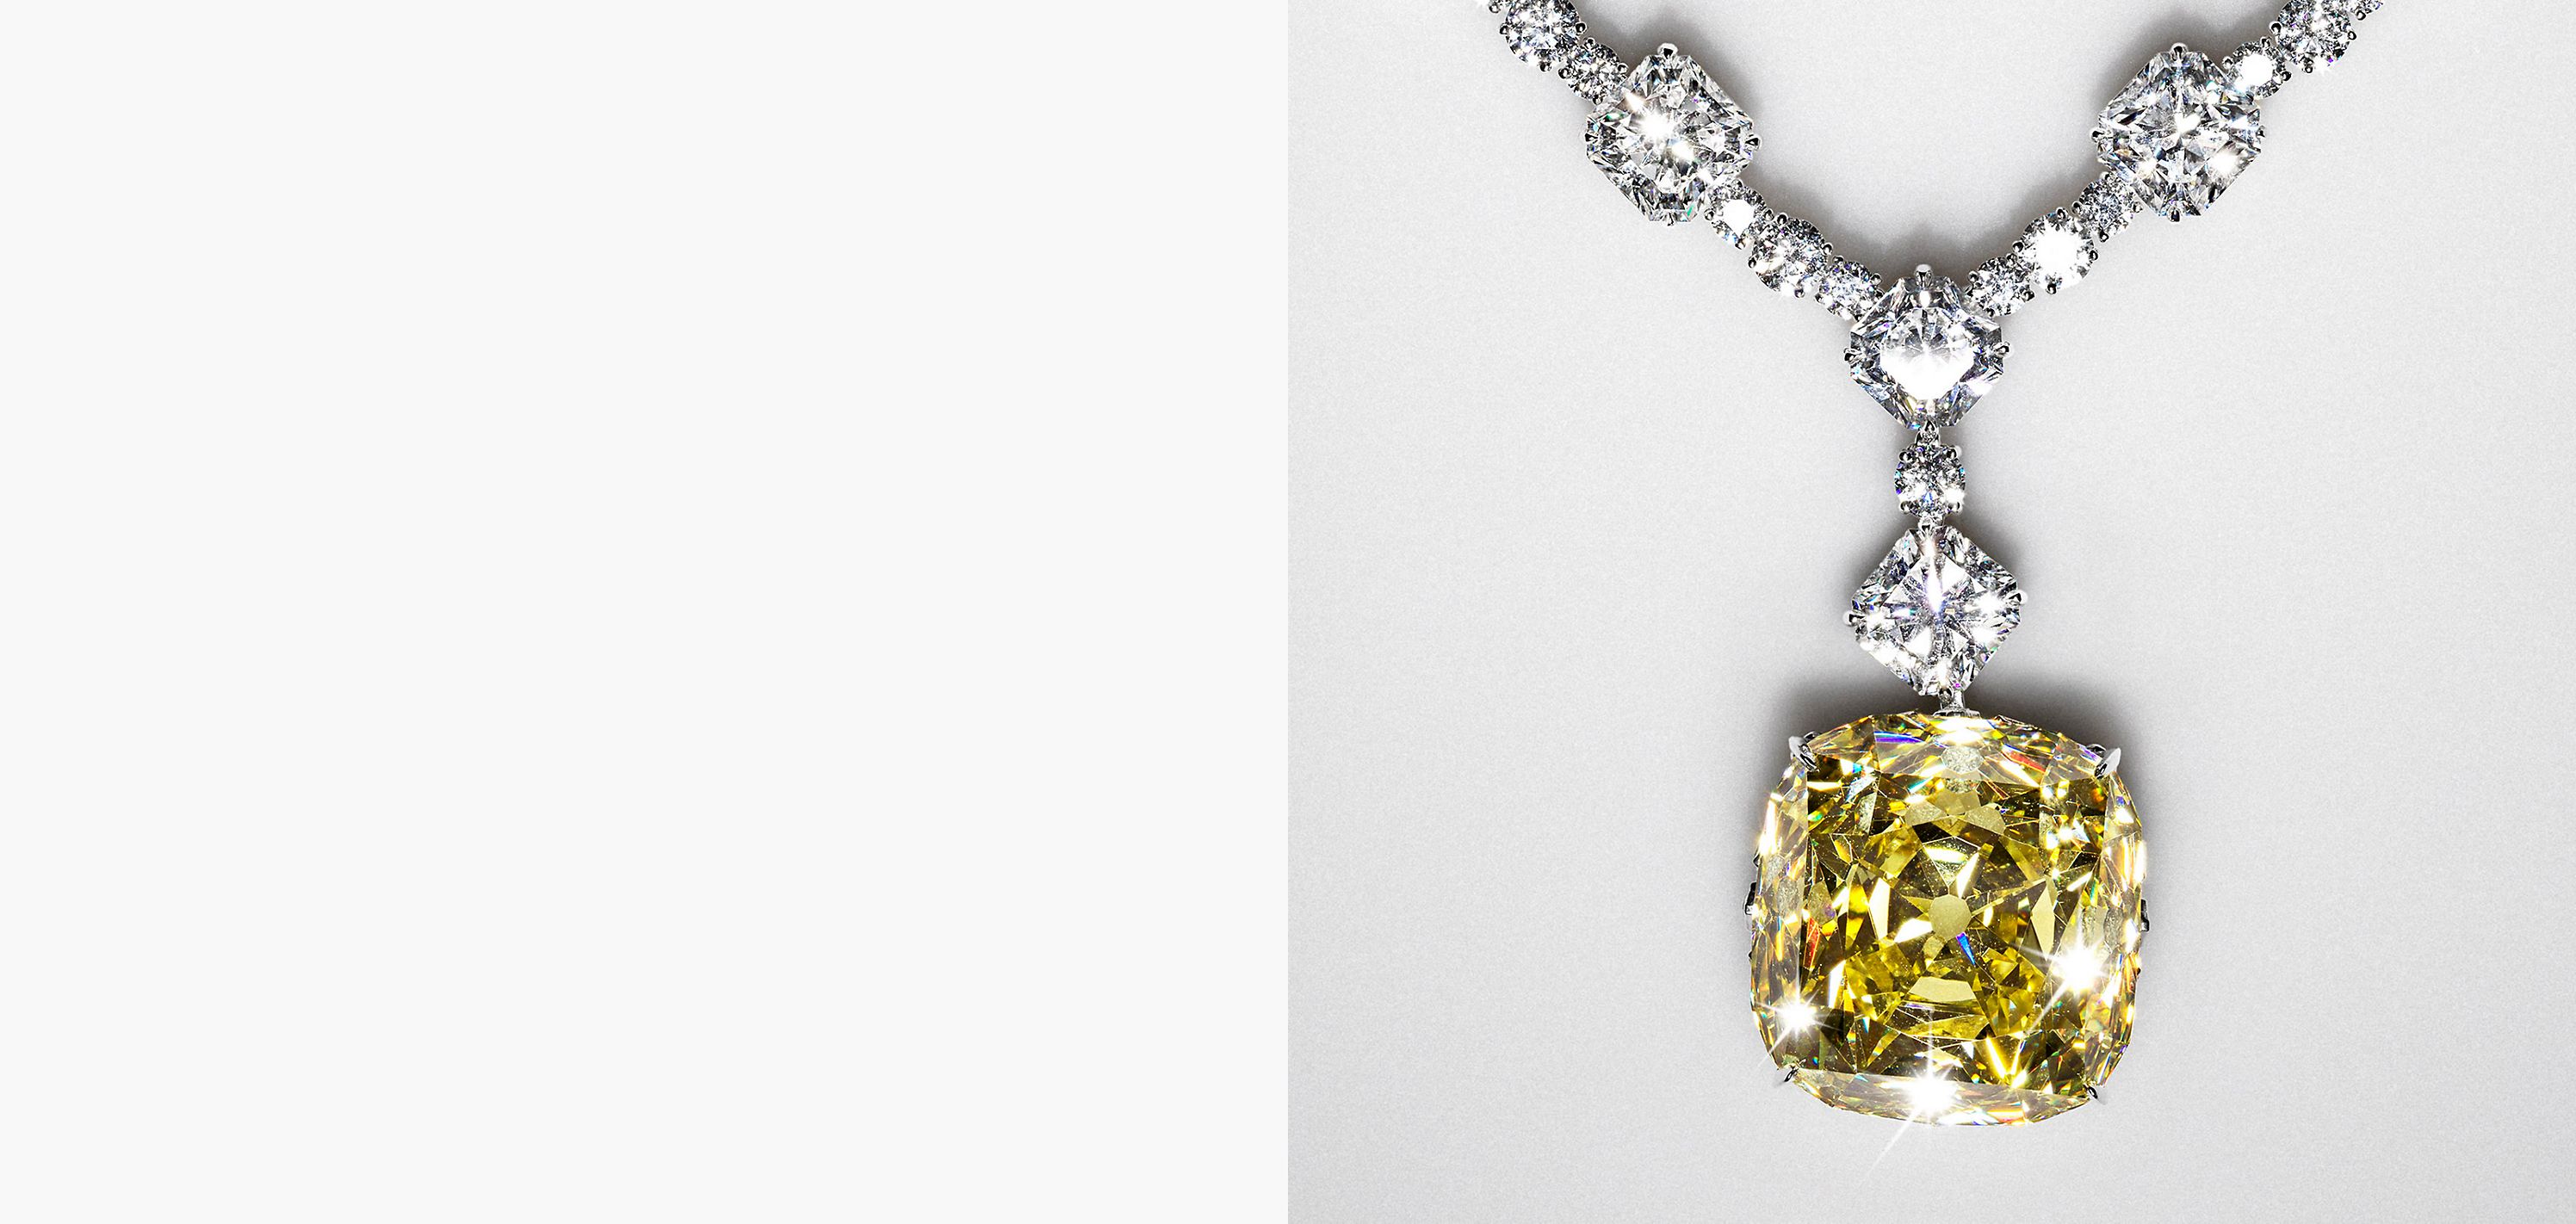 Entdecken Sie die Geschichte des gelben Diamanten von Tiffany